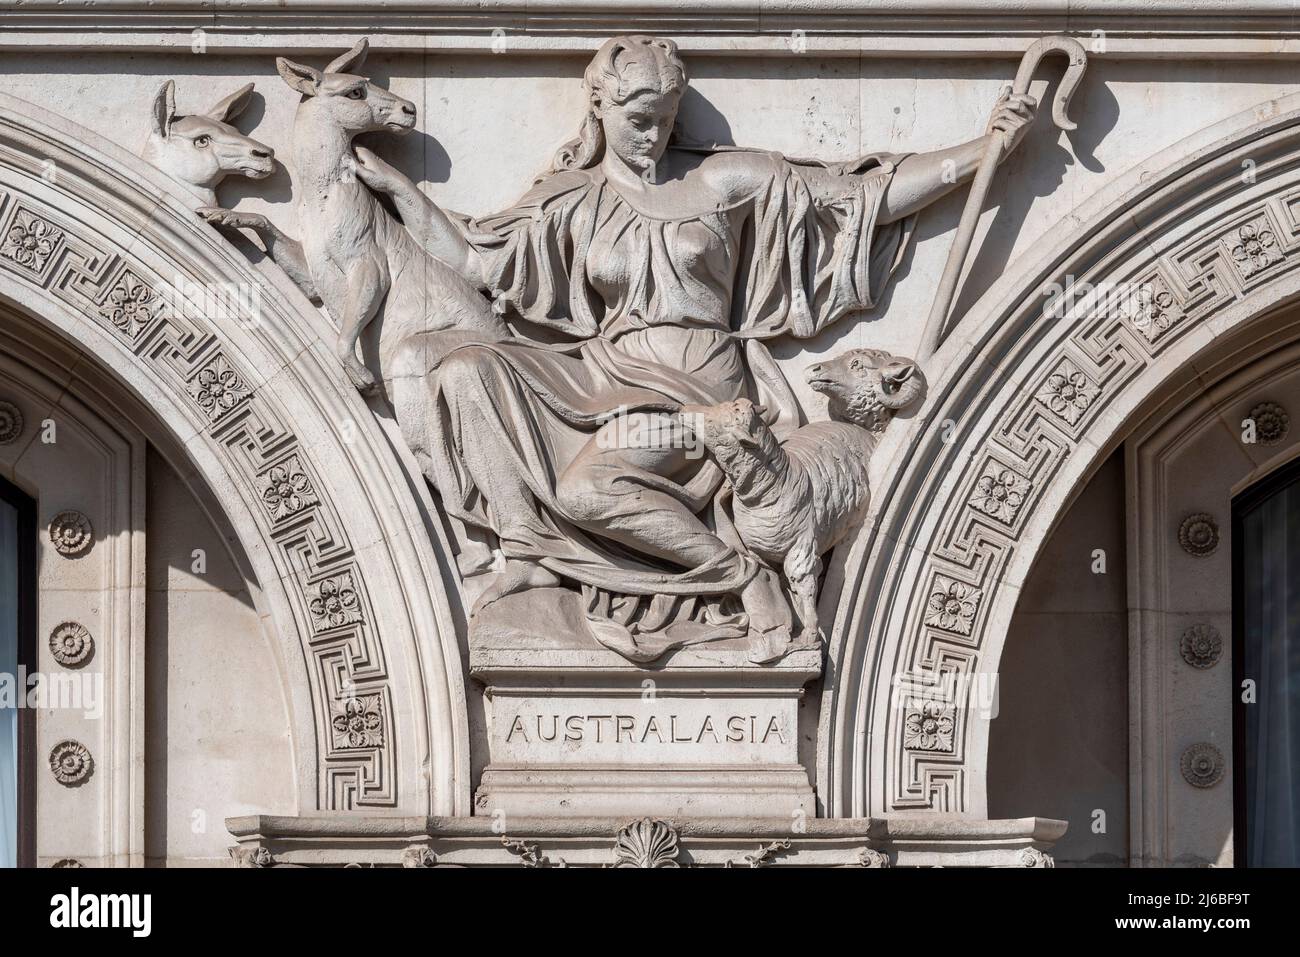 Steinarbeiten Detail auf Außen-, Commonwealth und Development Office Gebäude Gehäuse Regierungsabteilungen, London. Australasia Skulptur mit Känguru Stockfoto